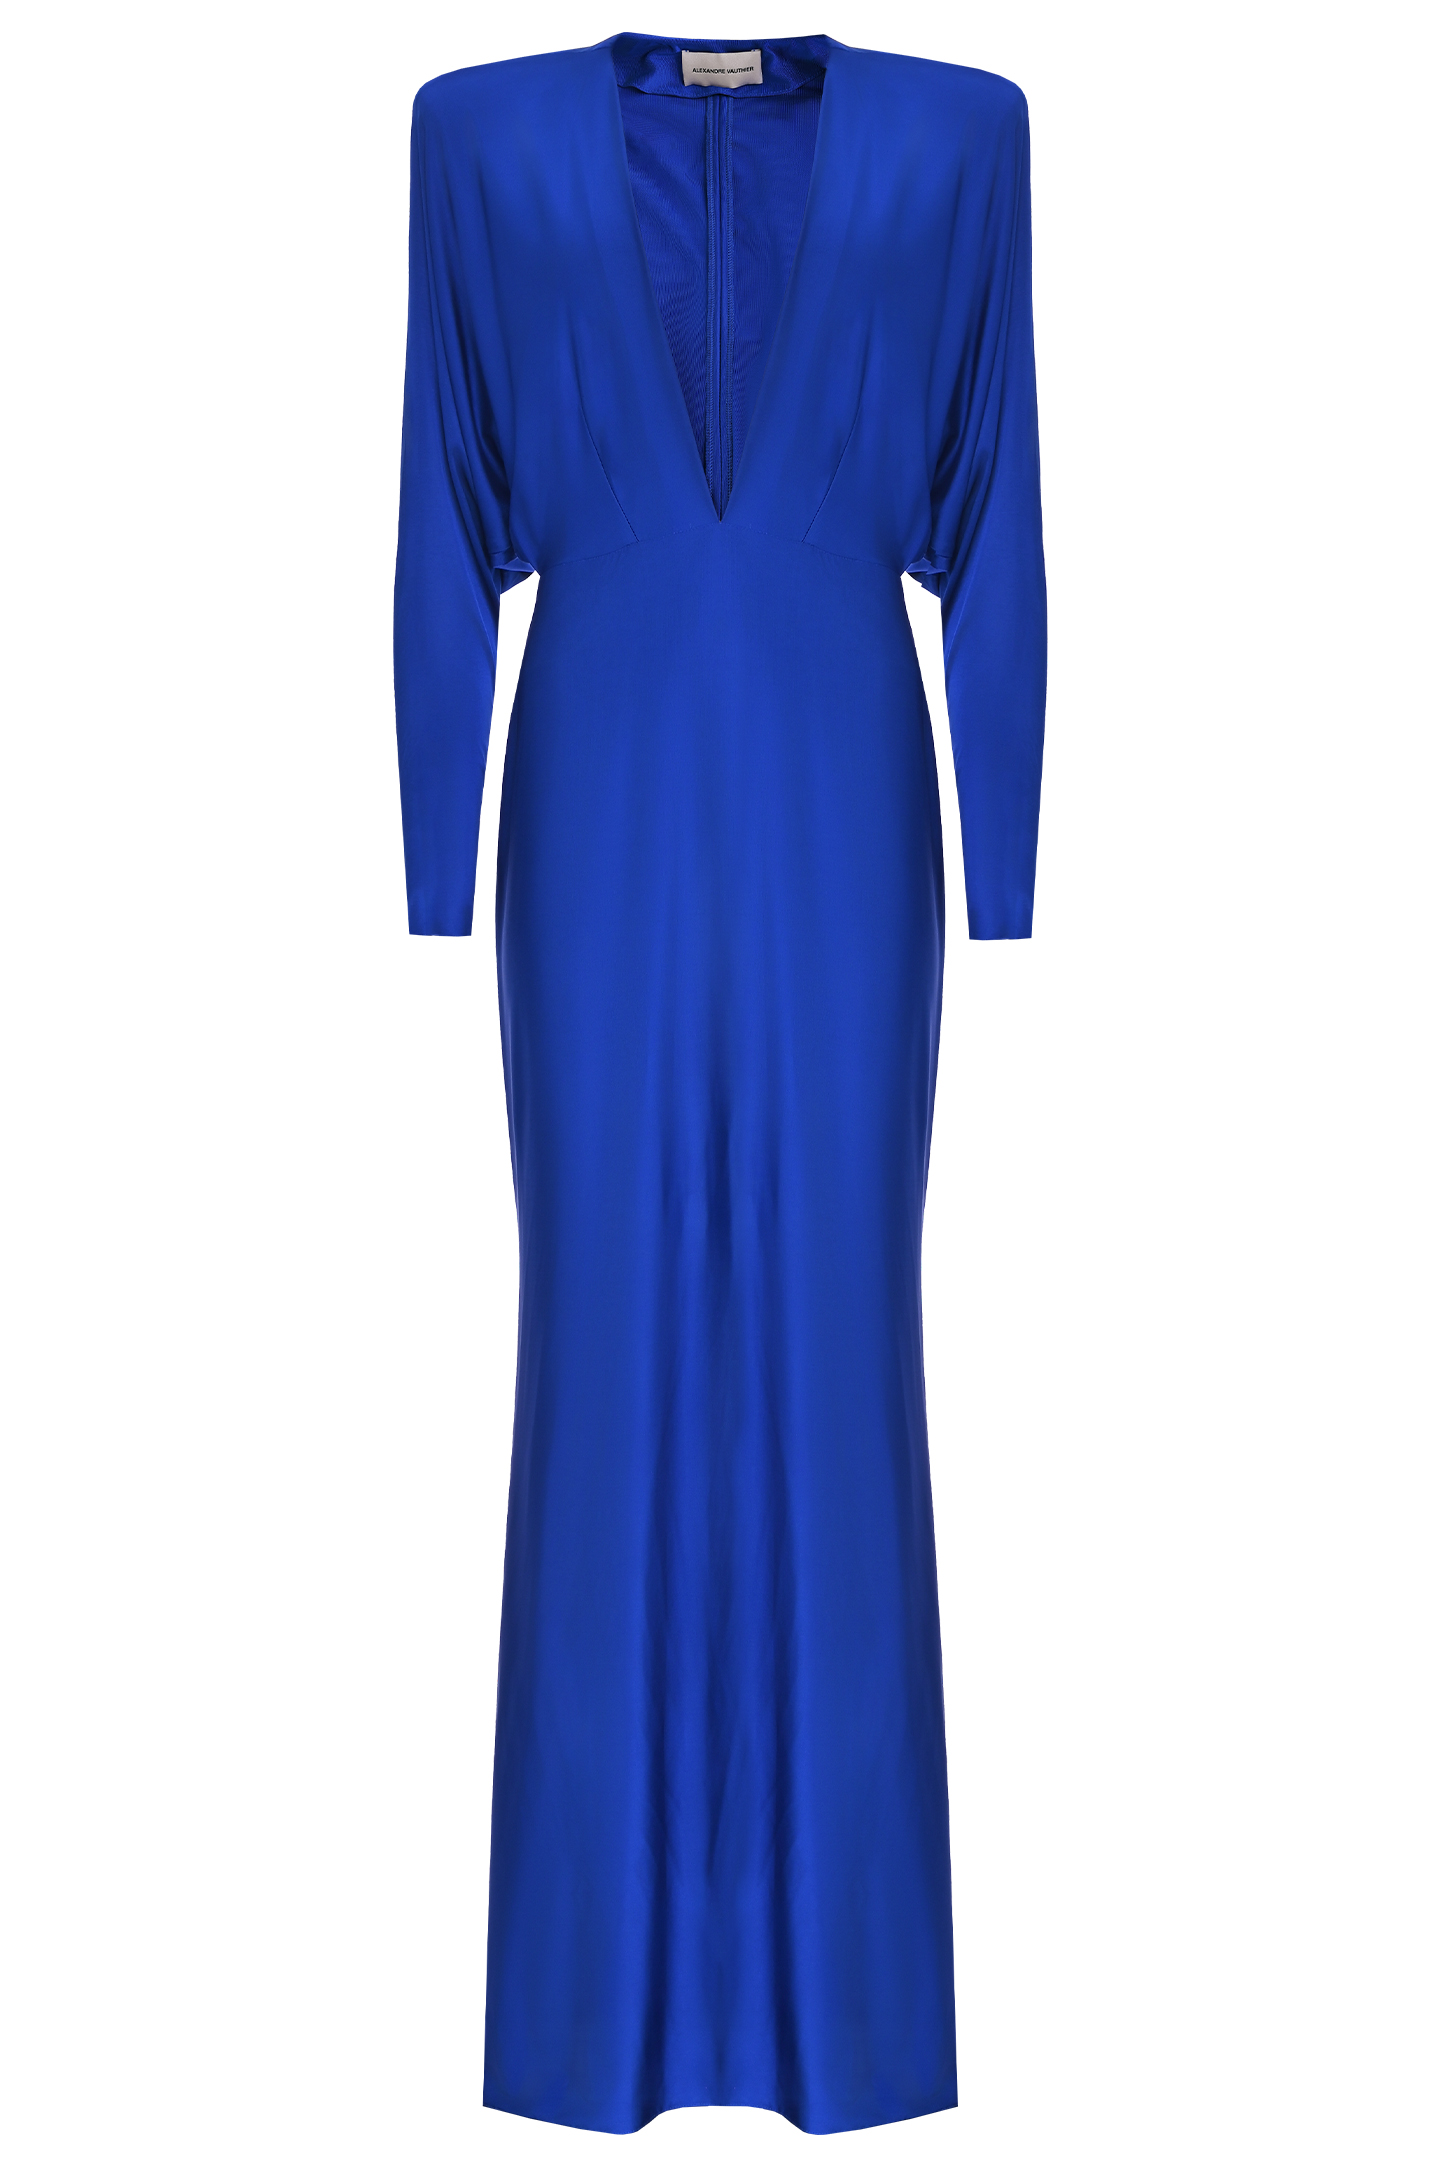 Платье ALEXANDRE VAUTHIER 232DR1919 1406, цвет: Синий, Женский